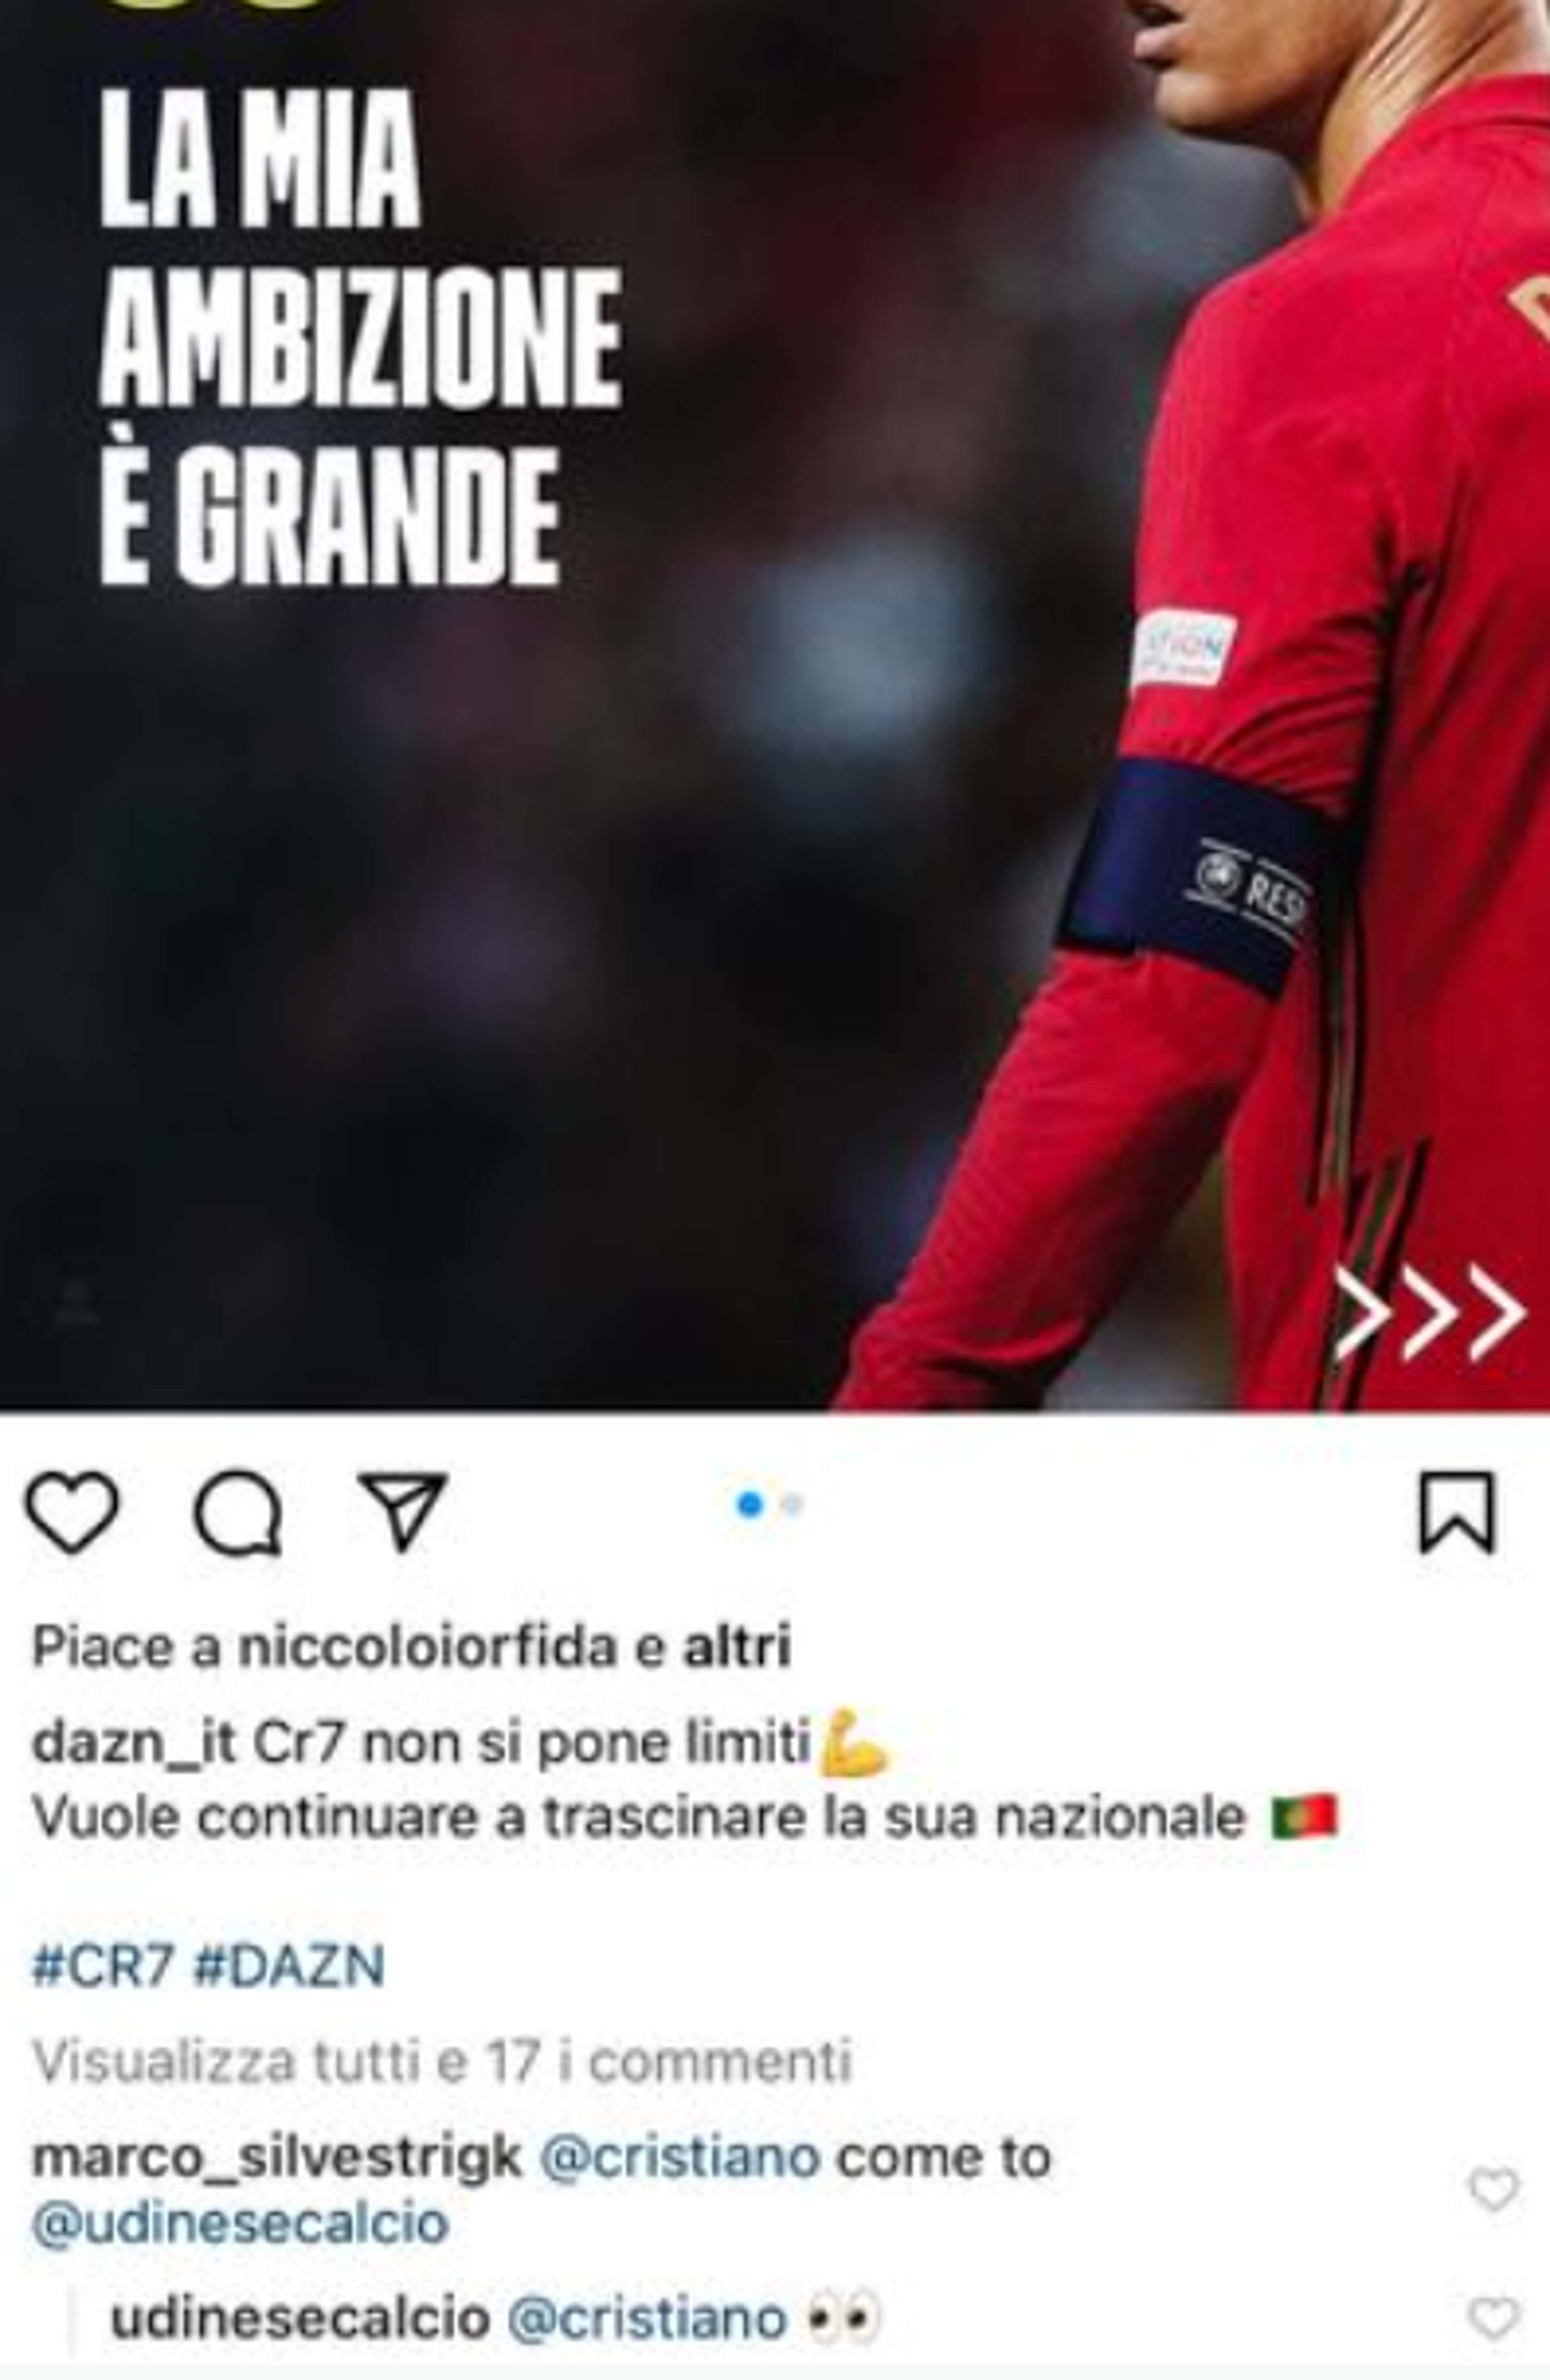 Cristiano Ronaldo Udinese invite